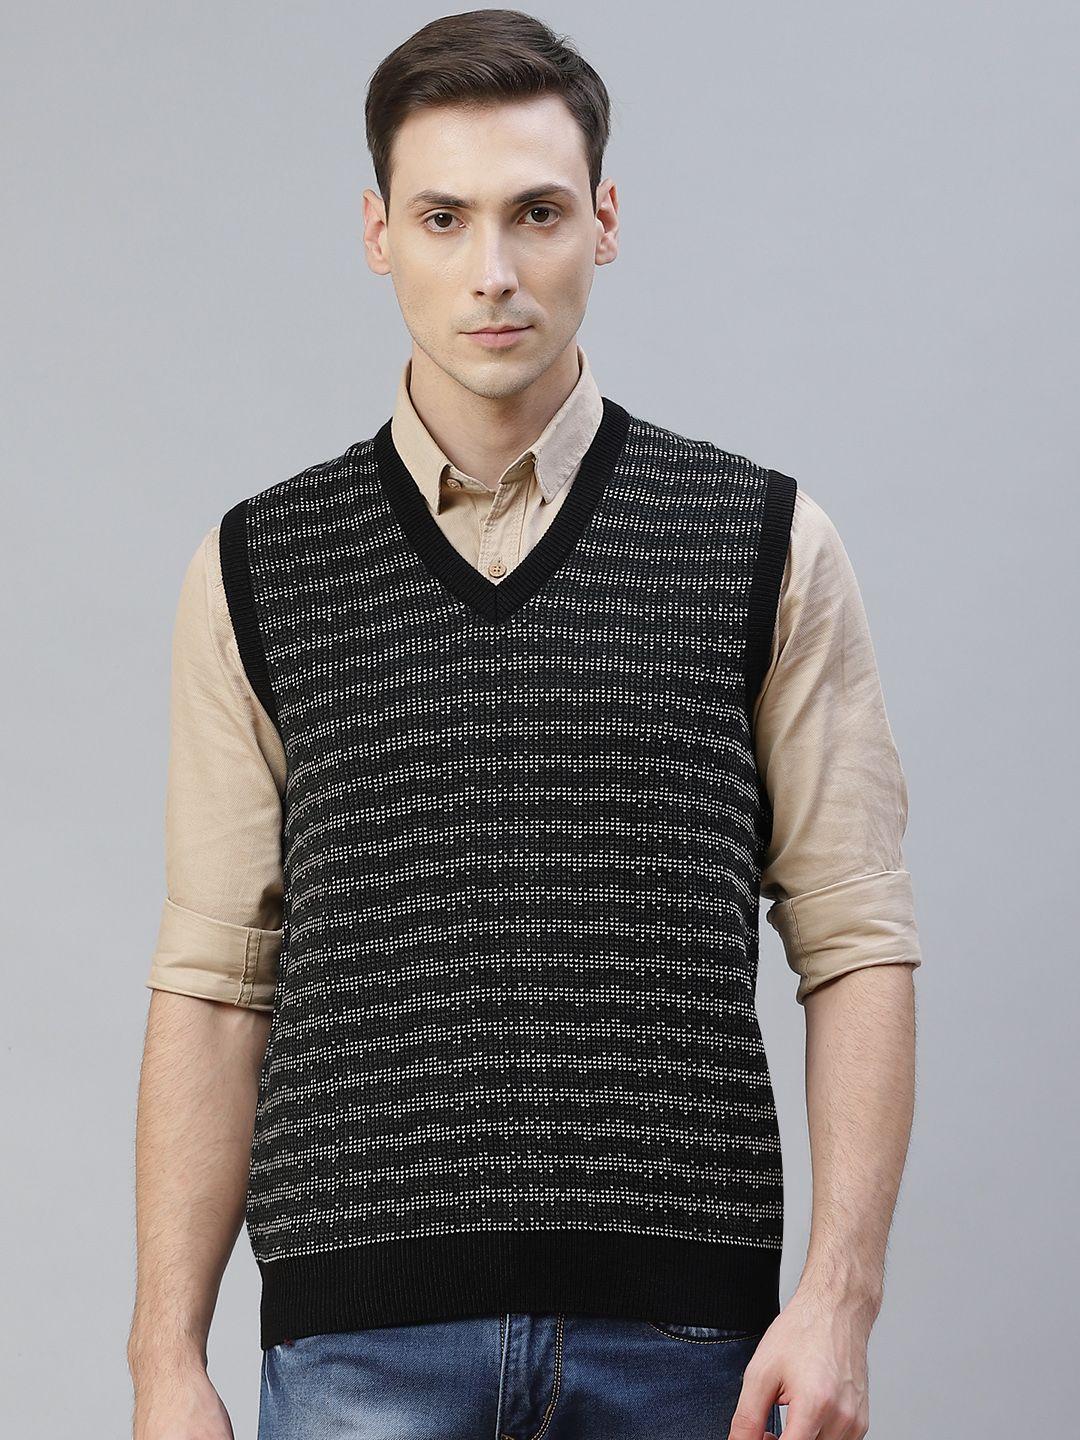 pierre carlo men black & white striped sweater vest